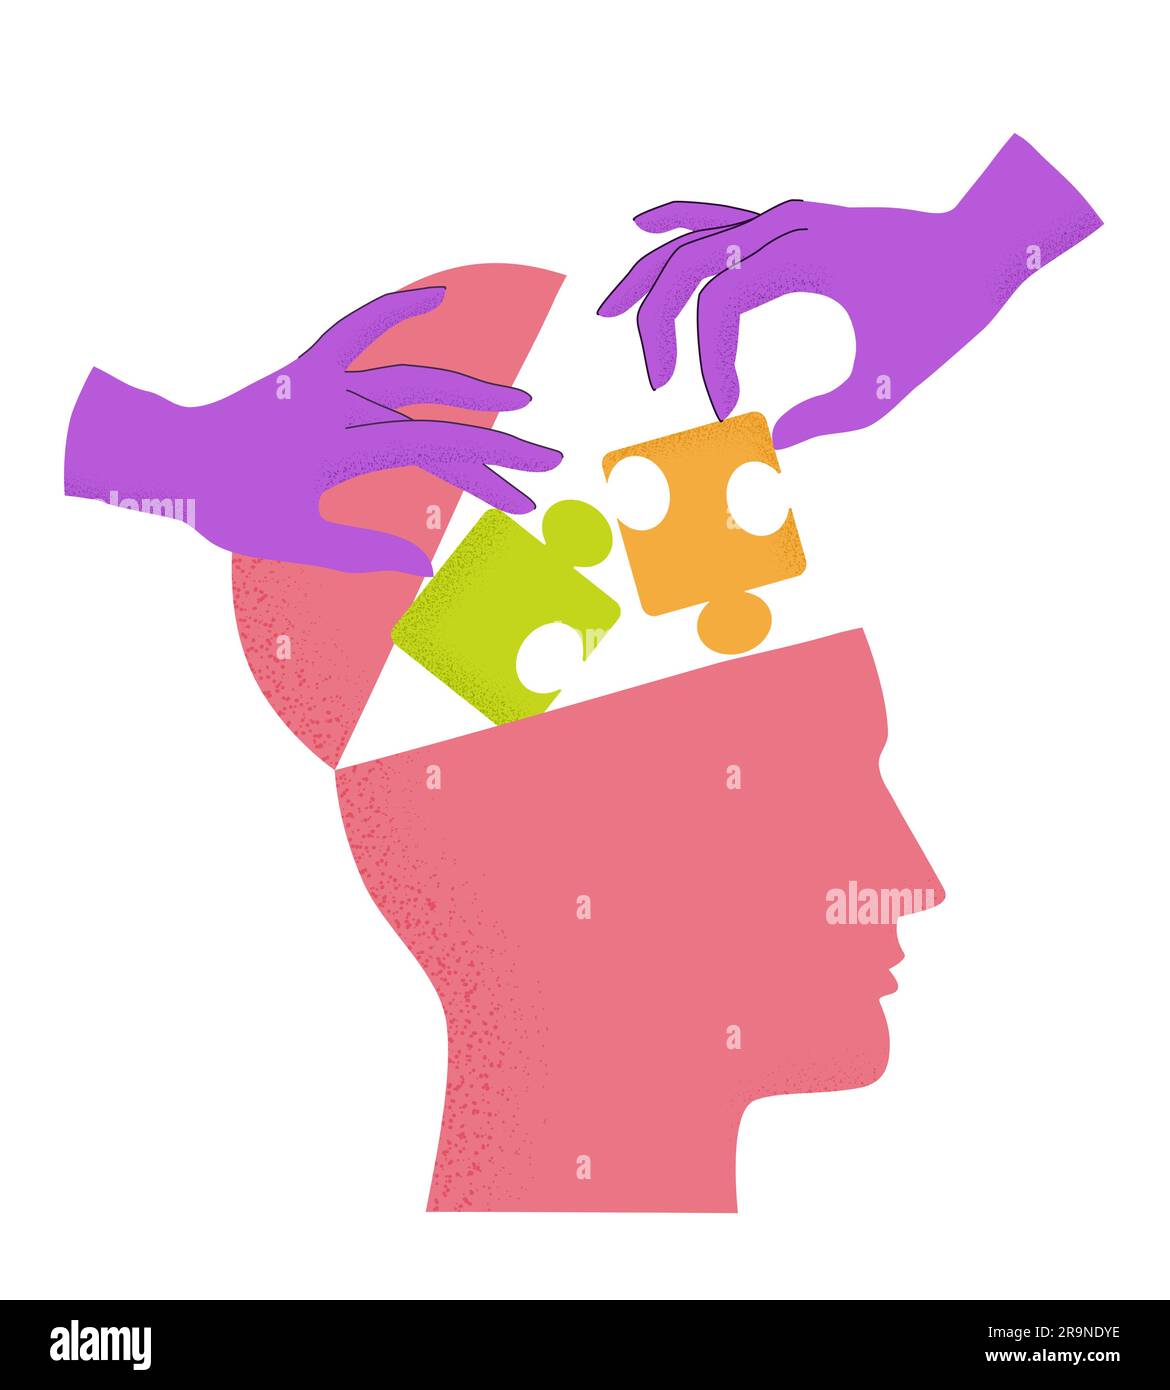 Illustrazione vettoriale della silhouette della testa umana con le mani che mettono i pezzi del puzzle a testa aperta isolati su bianco. Concetto di salute mentale, pensiero proce Illustrazione Vettoriale